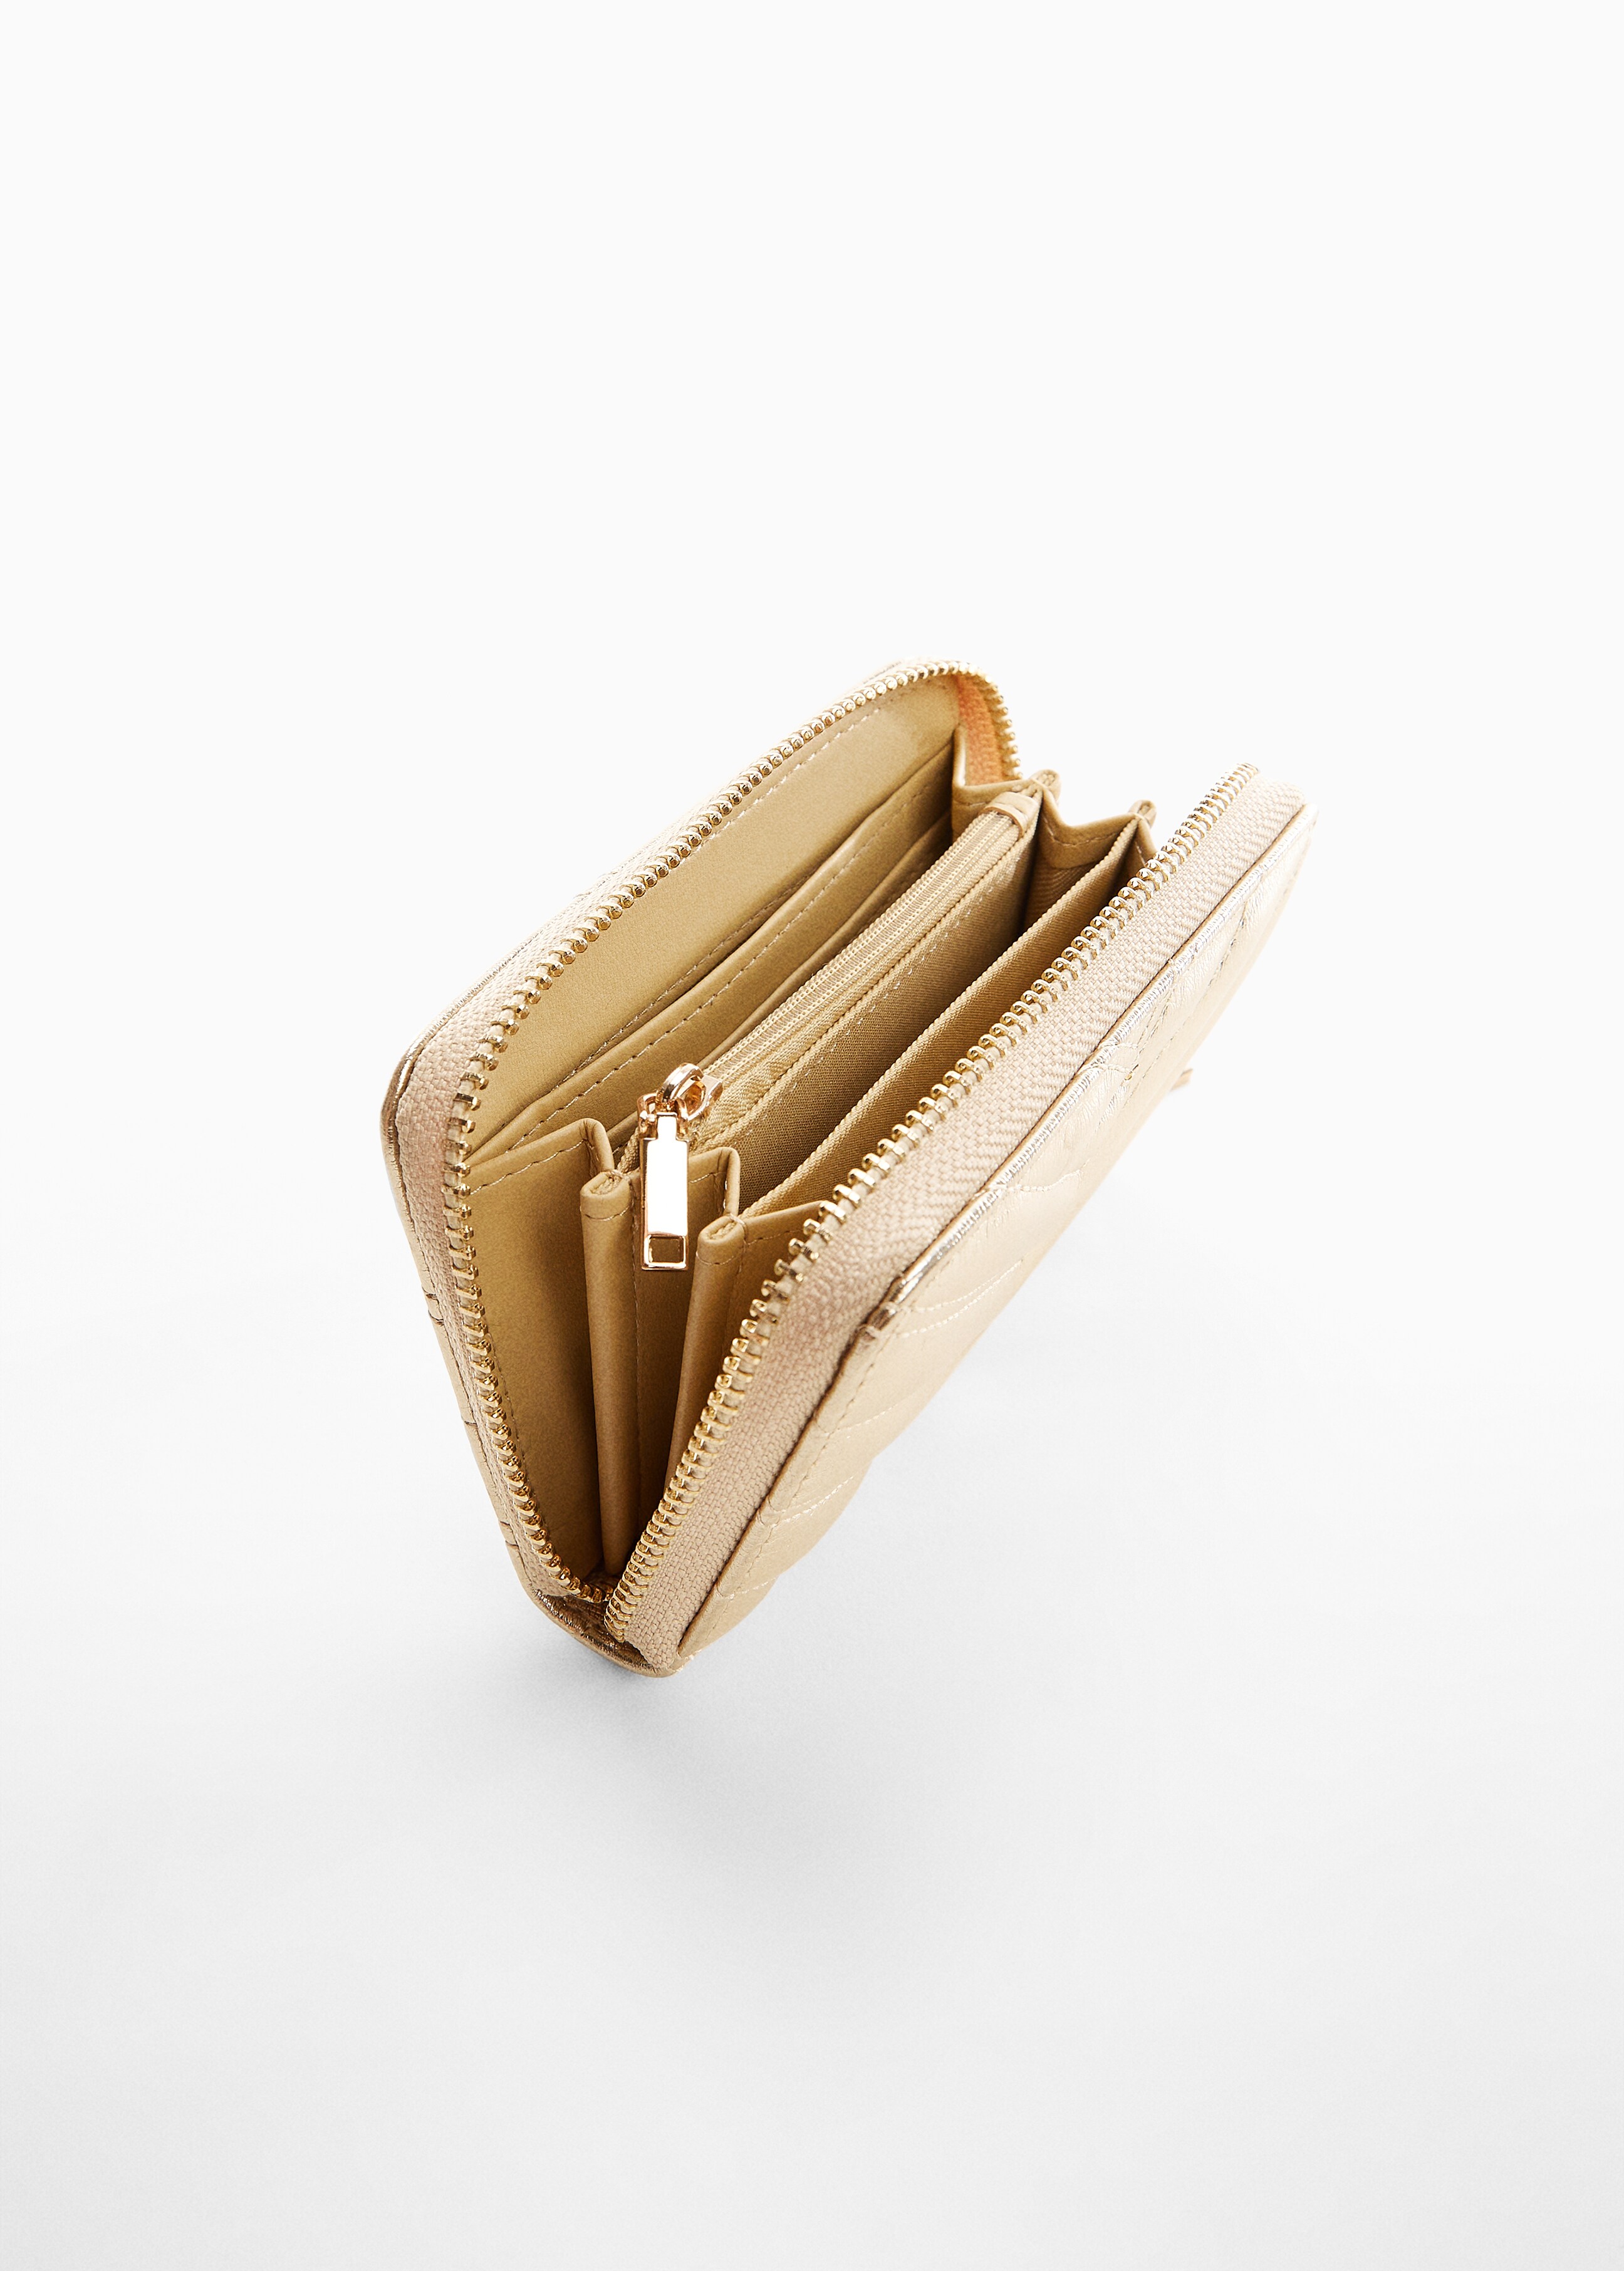 Padded metallic wallet - Medium plane